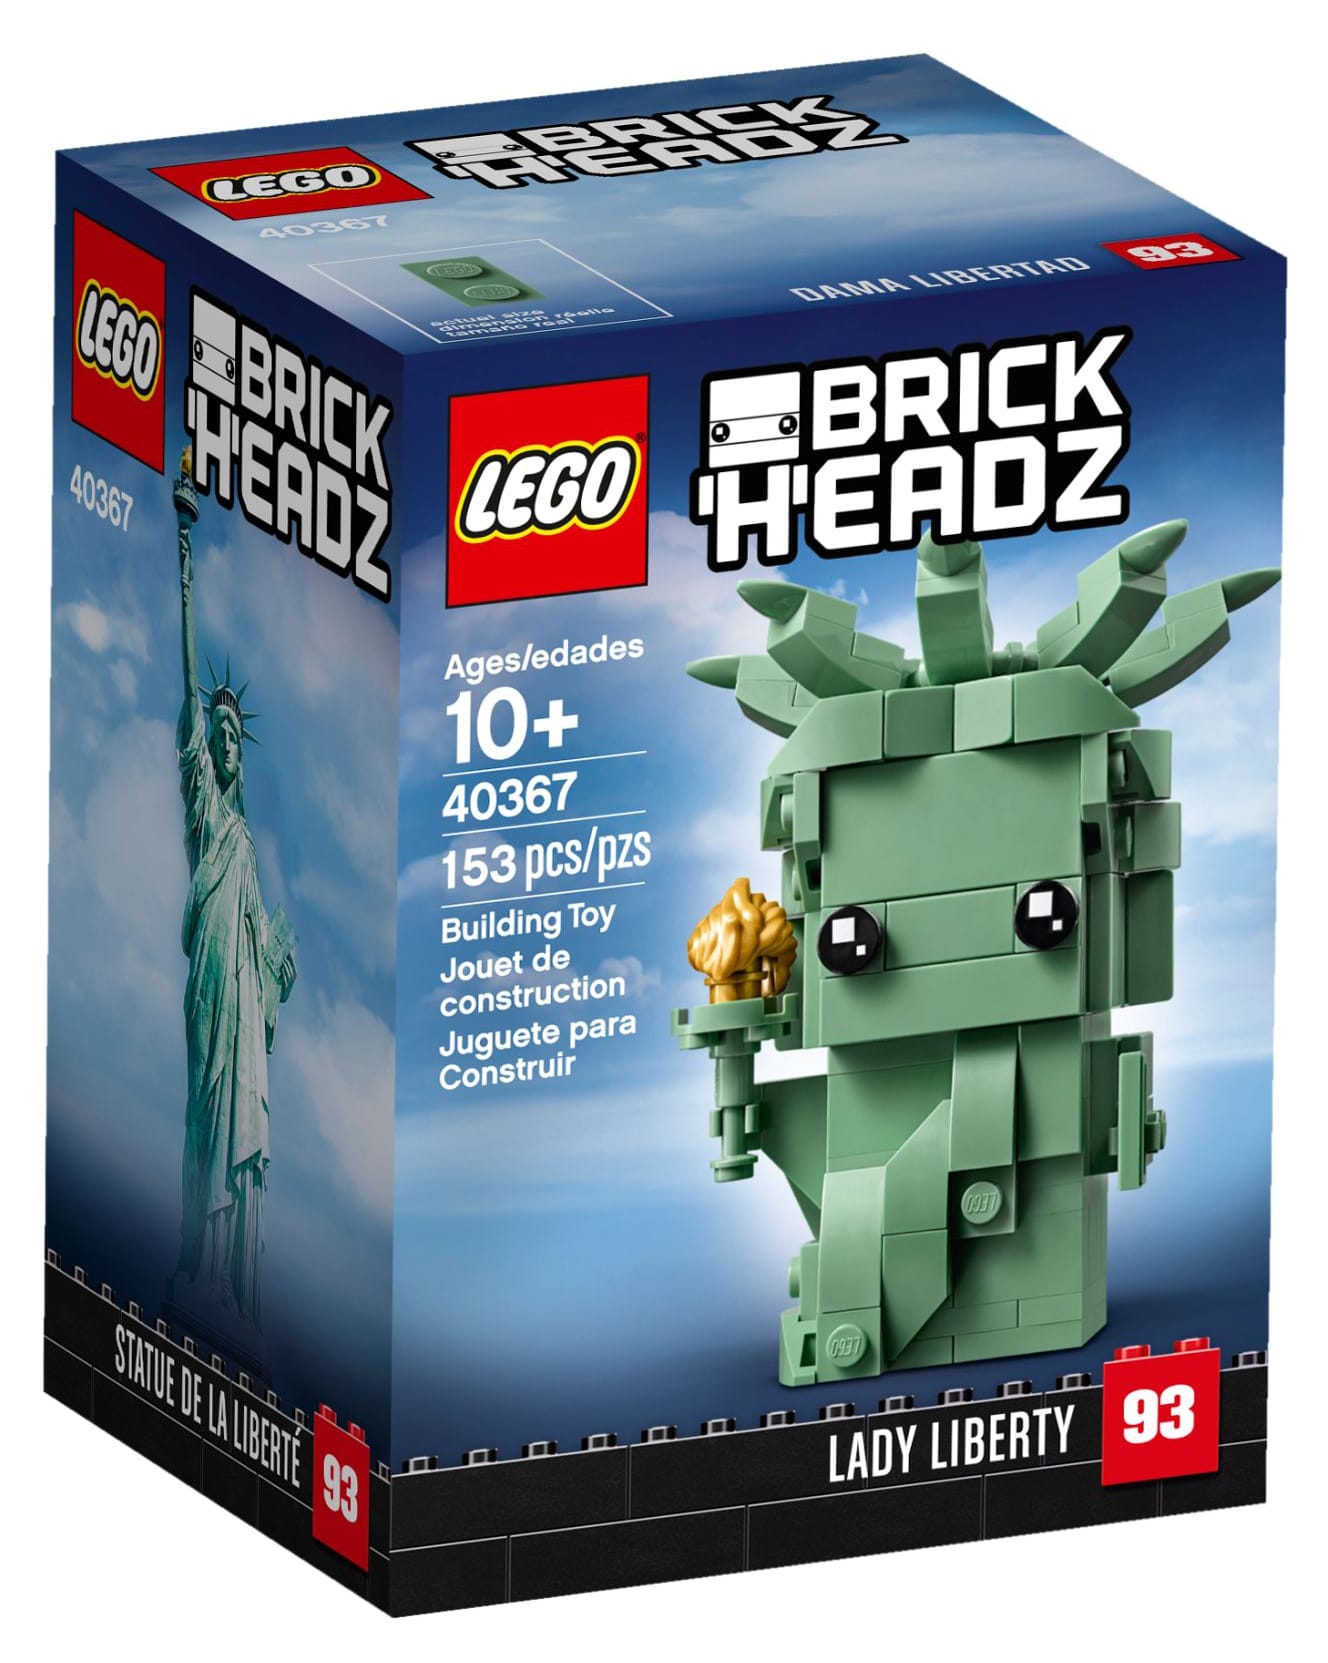 LEGO 40367 Lady Liberty BrickHeadz Box